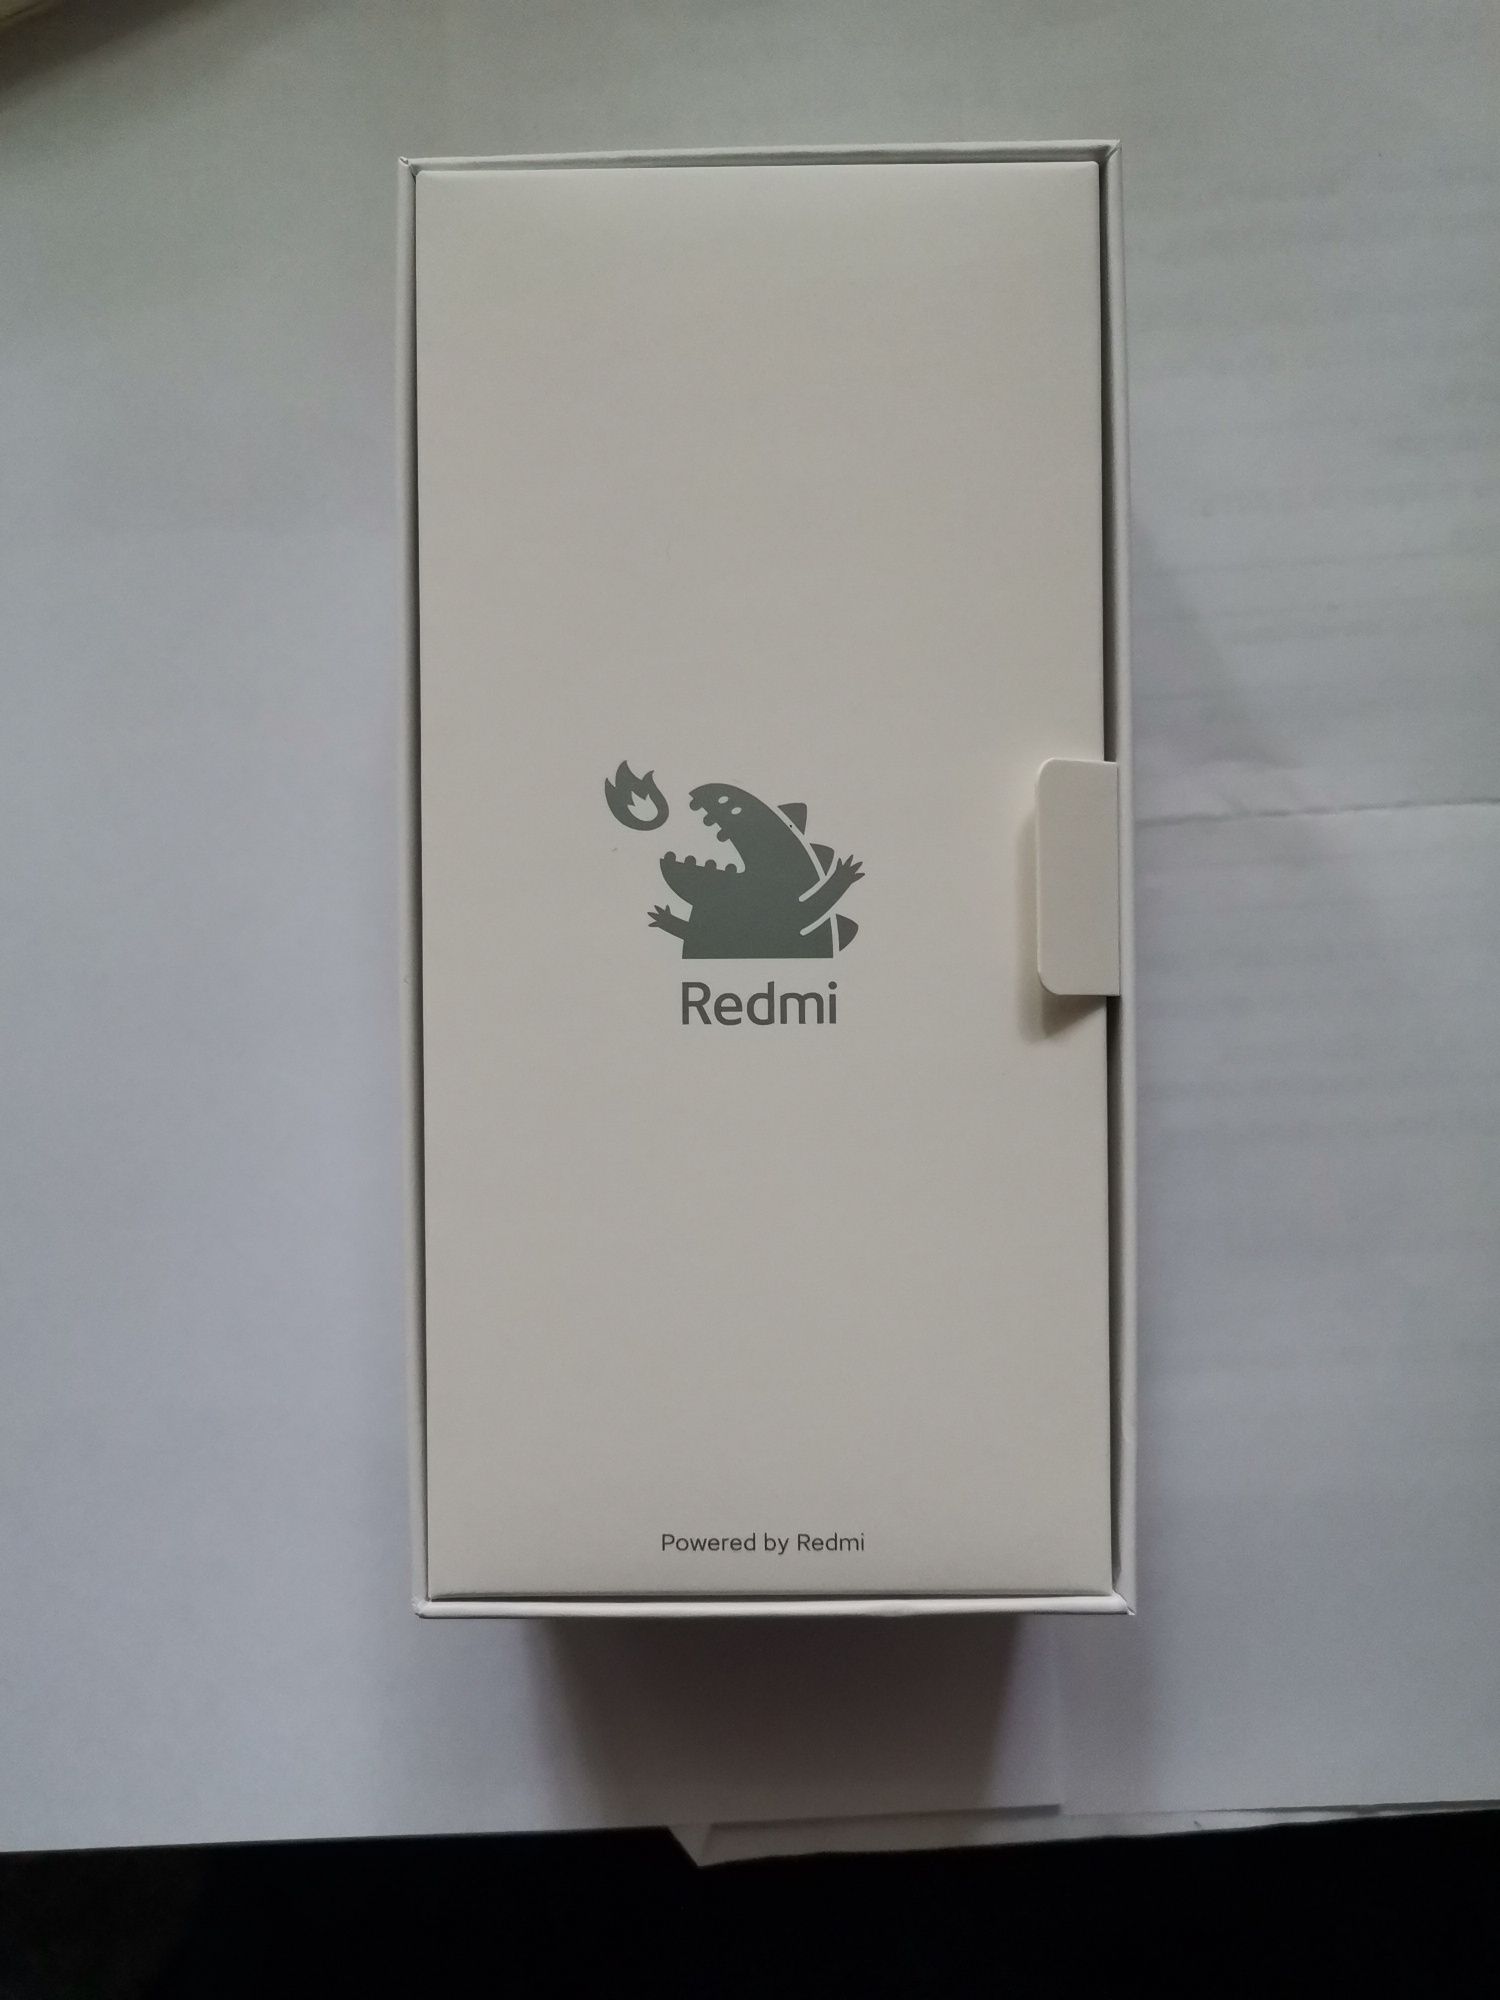 Xiaomi Redmi Note 10 Pro CN 6/128